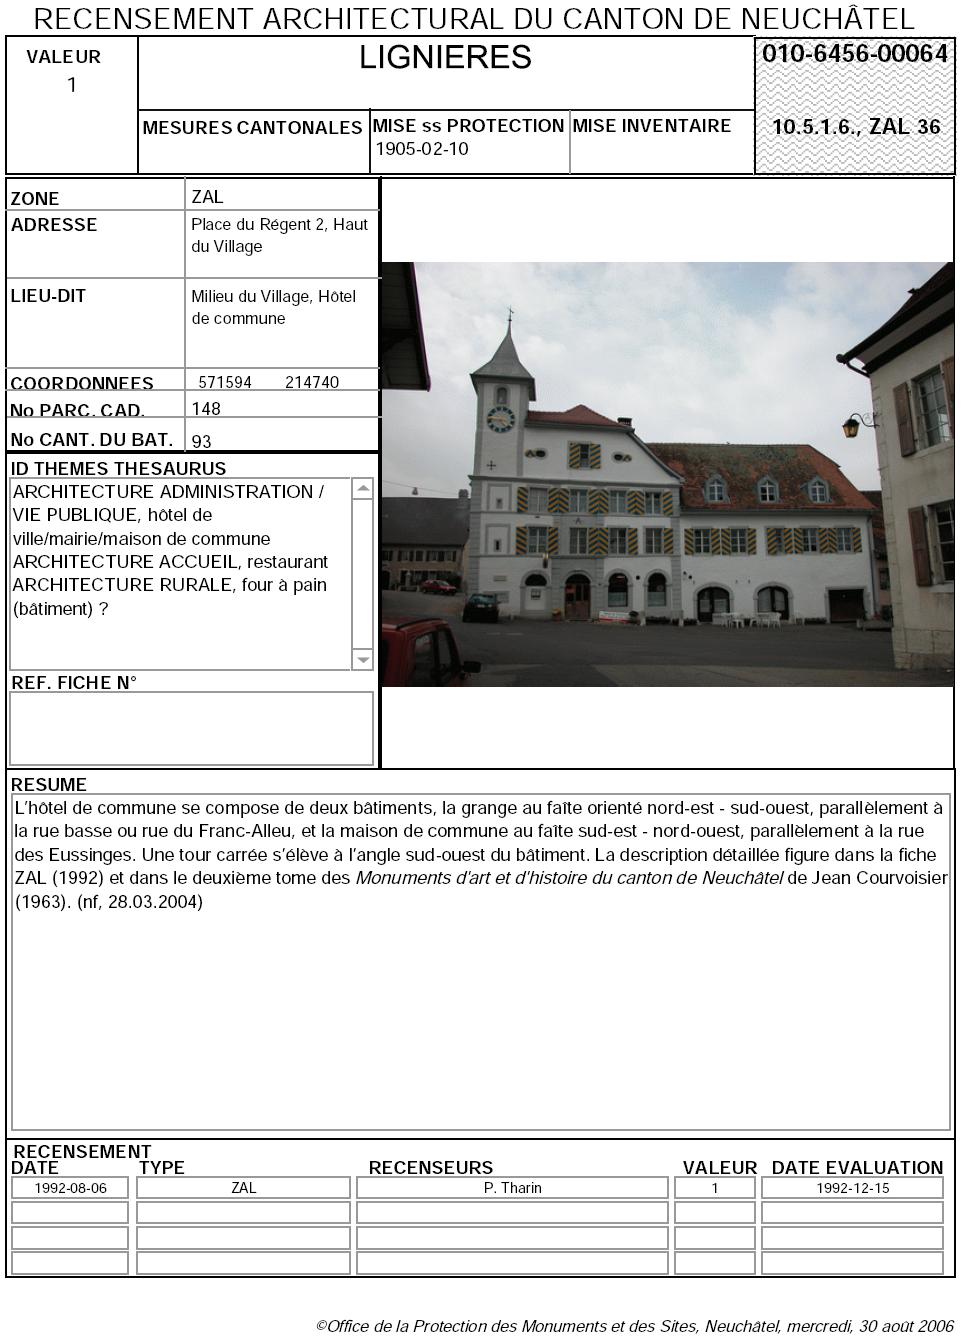 Recensement architectural du canton de Neuchâtel: Fiche 010-6456-00064